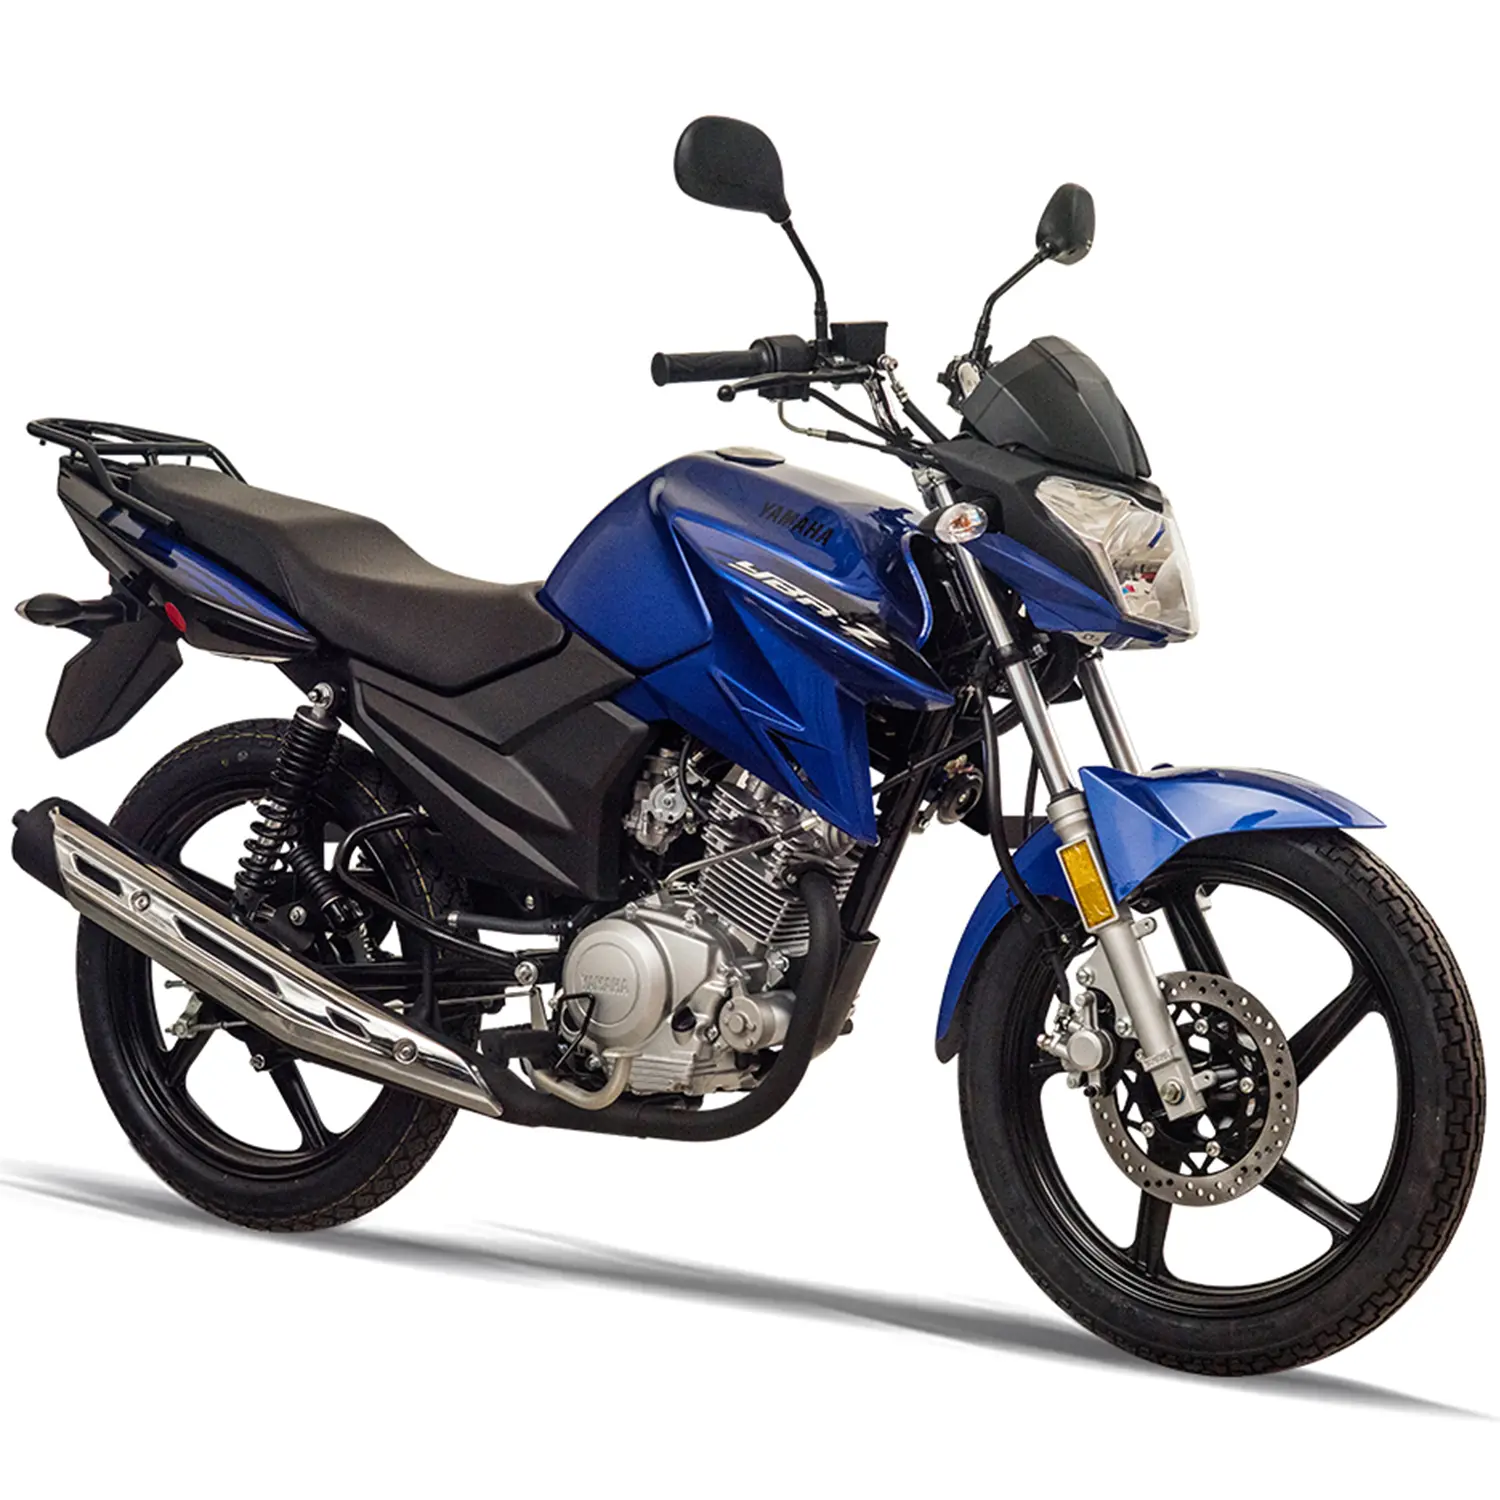 yamaha motos precios - Cuánto vale una moto Yamaha 300